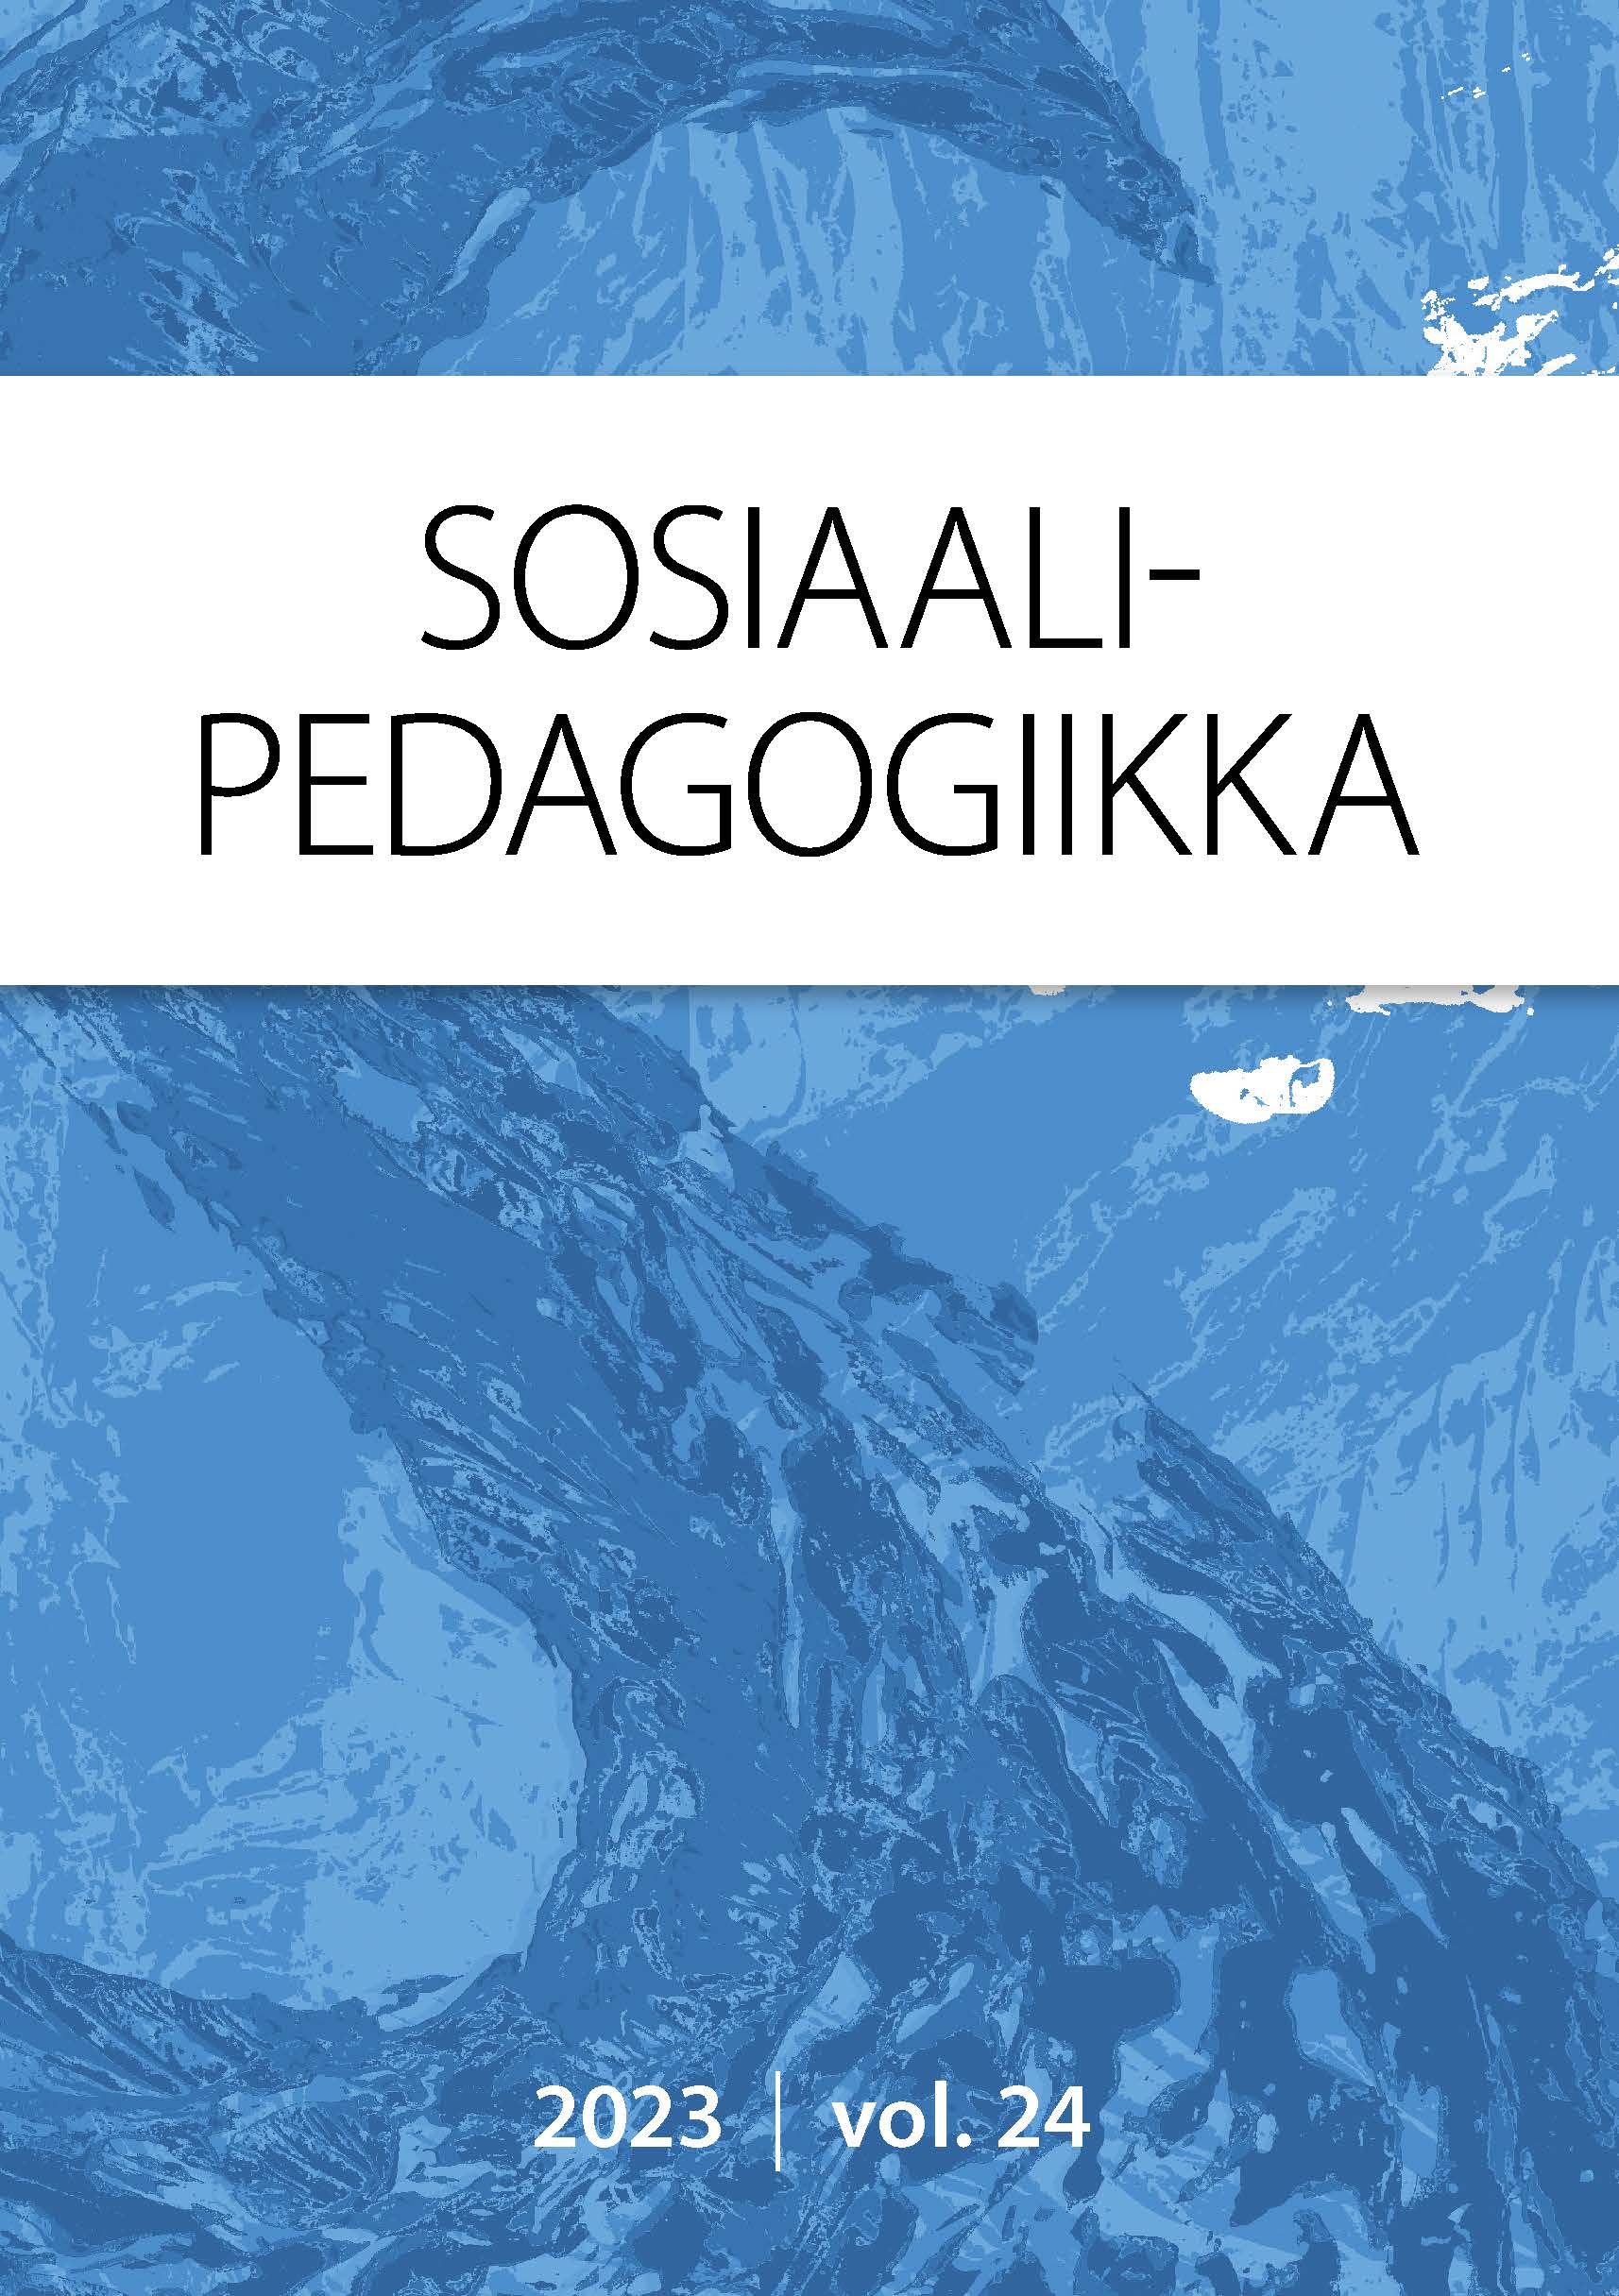 					Näytä Vol 24 (2023): Sosiaalipedagogiikka
				